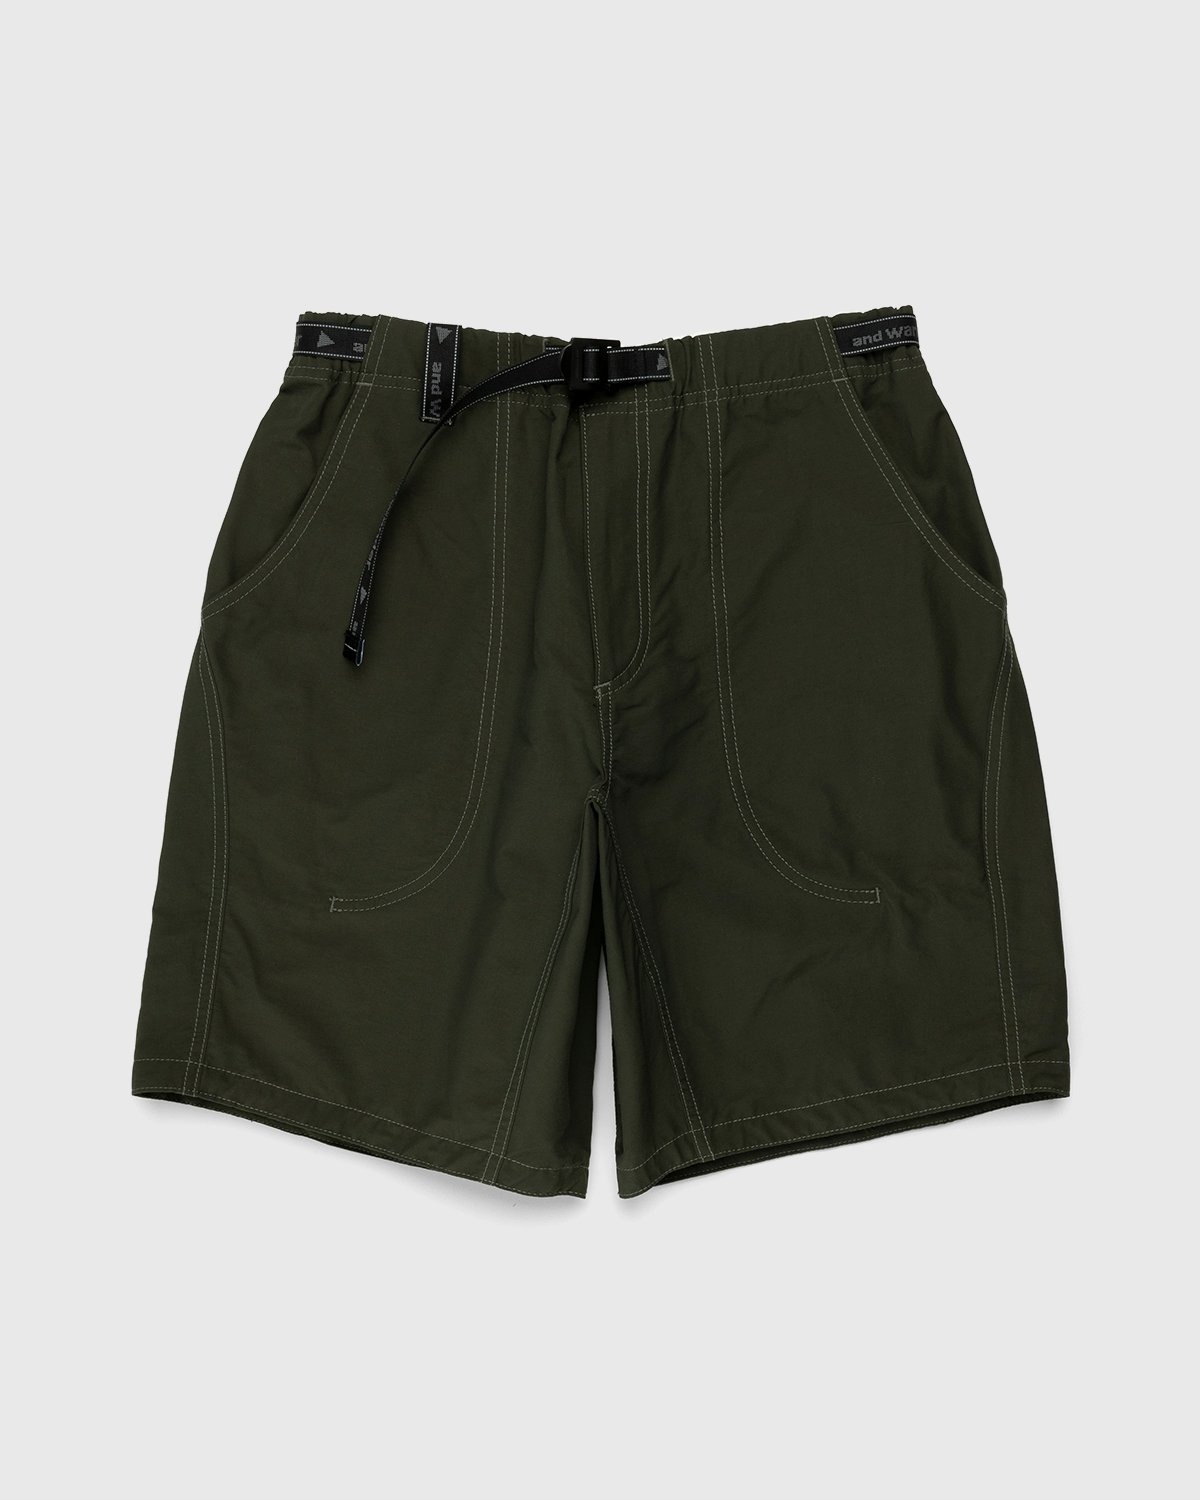 And Wander – 60/40 Cloth Shorts Khaki - Shorts - Green - Image 1